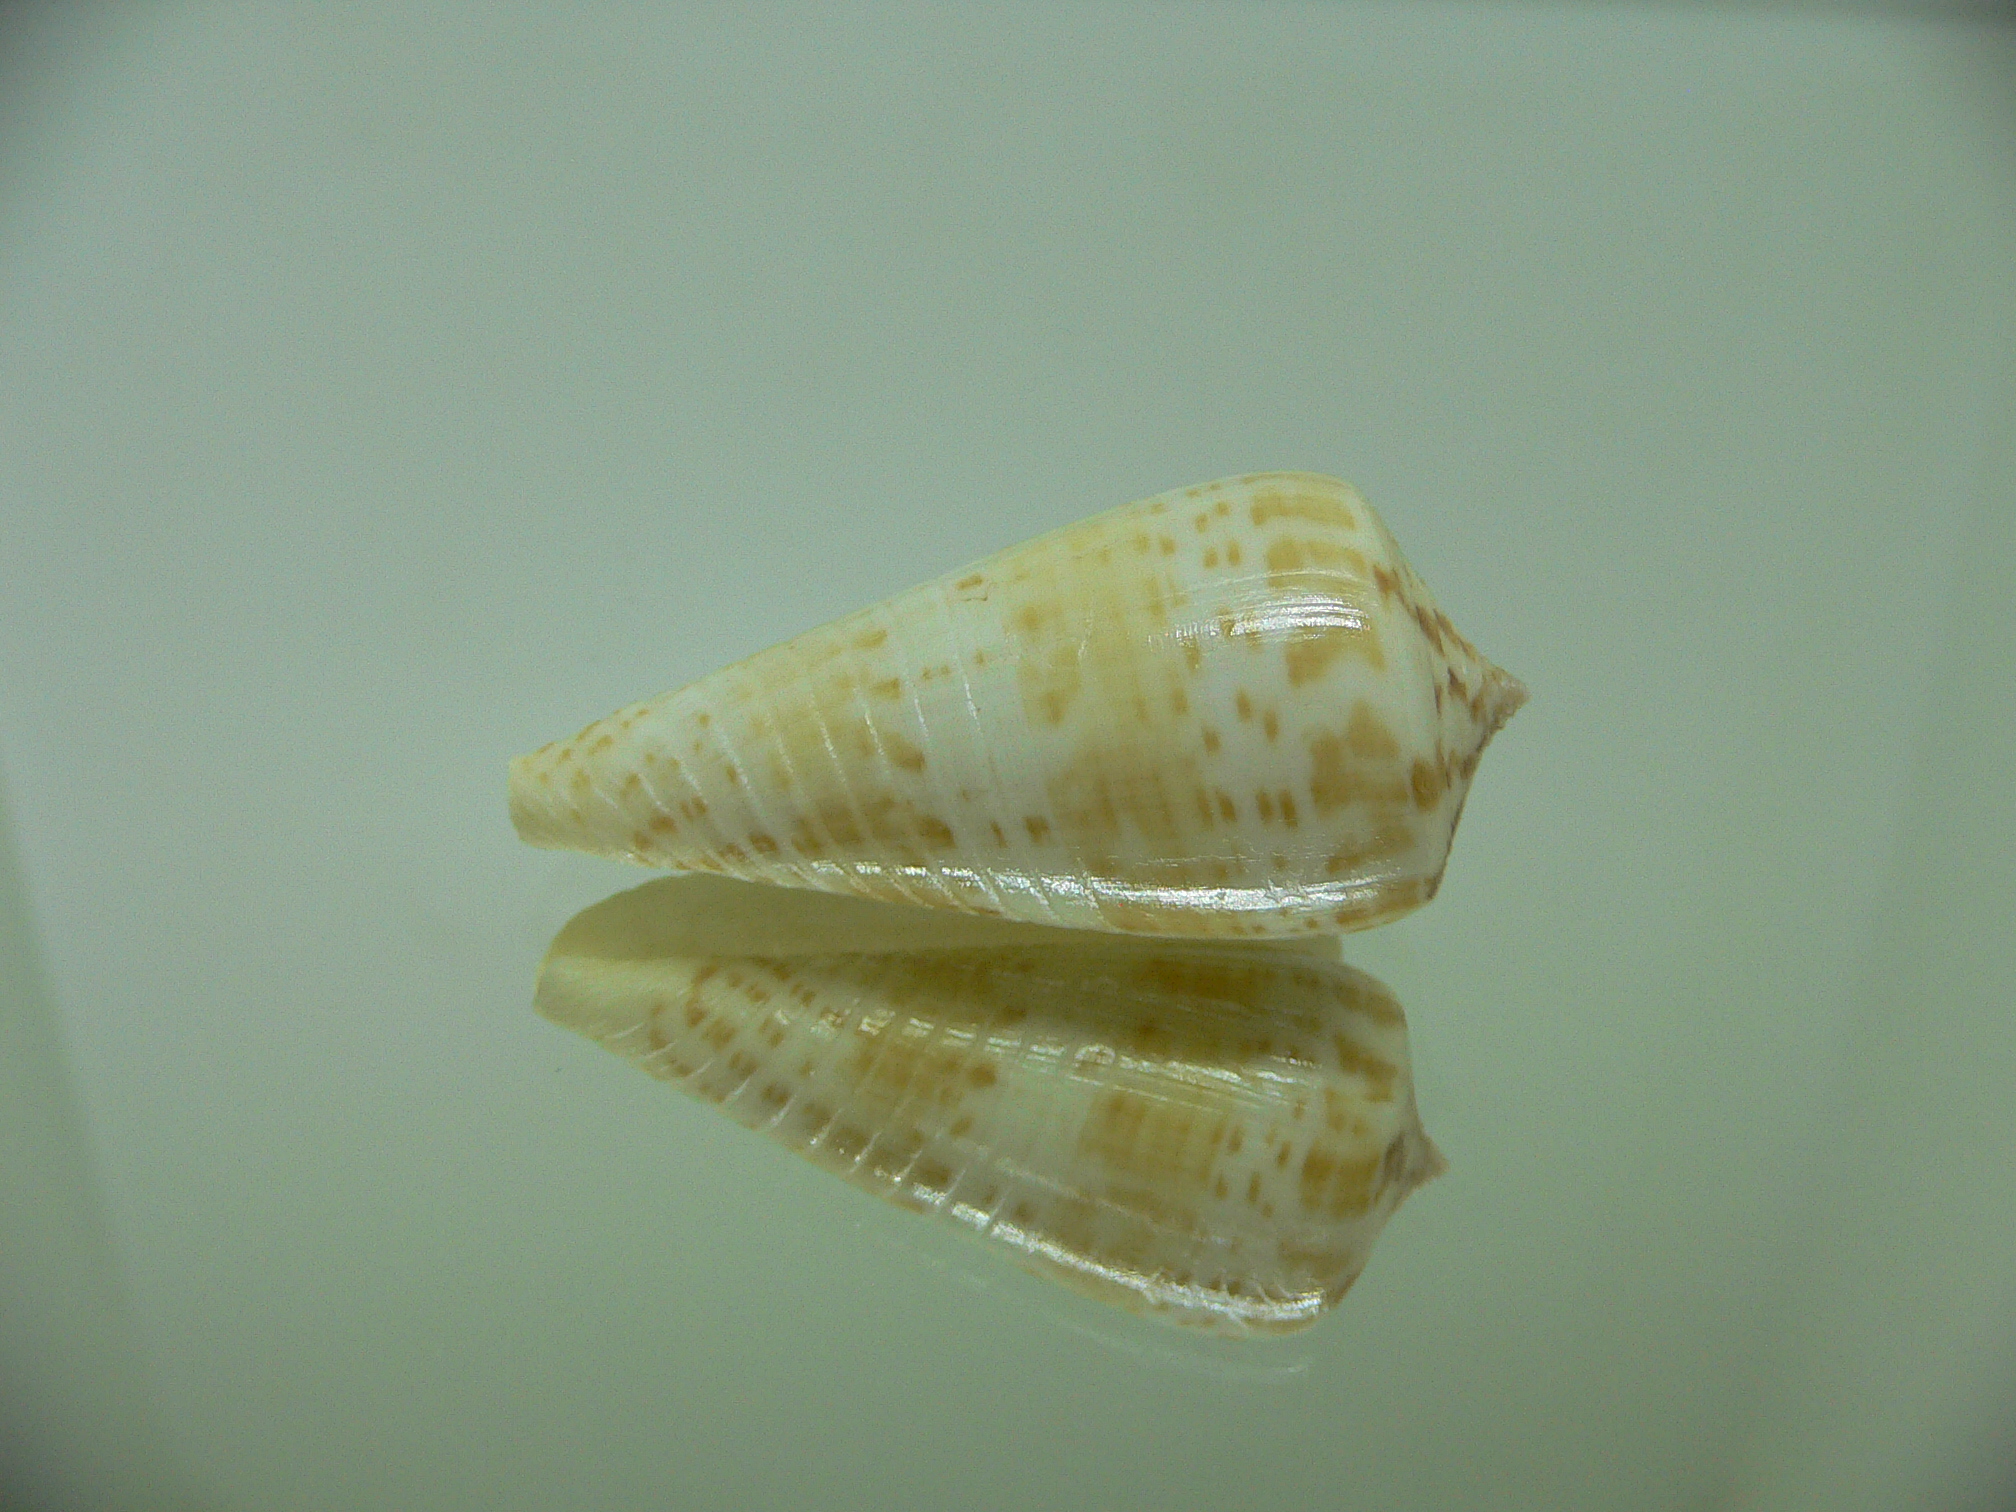 Conus inscriptus maculospira (var.)